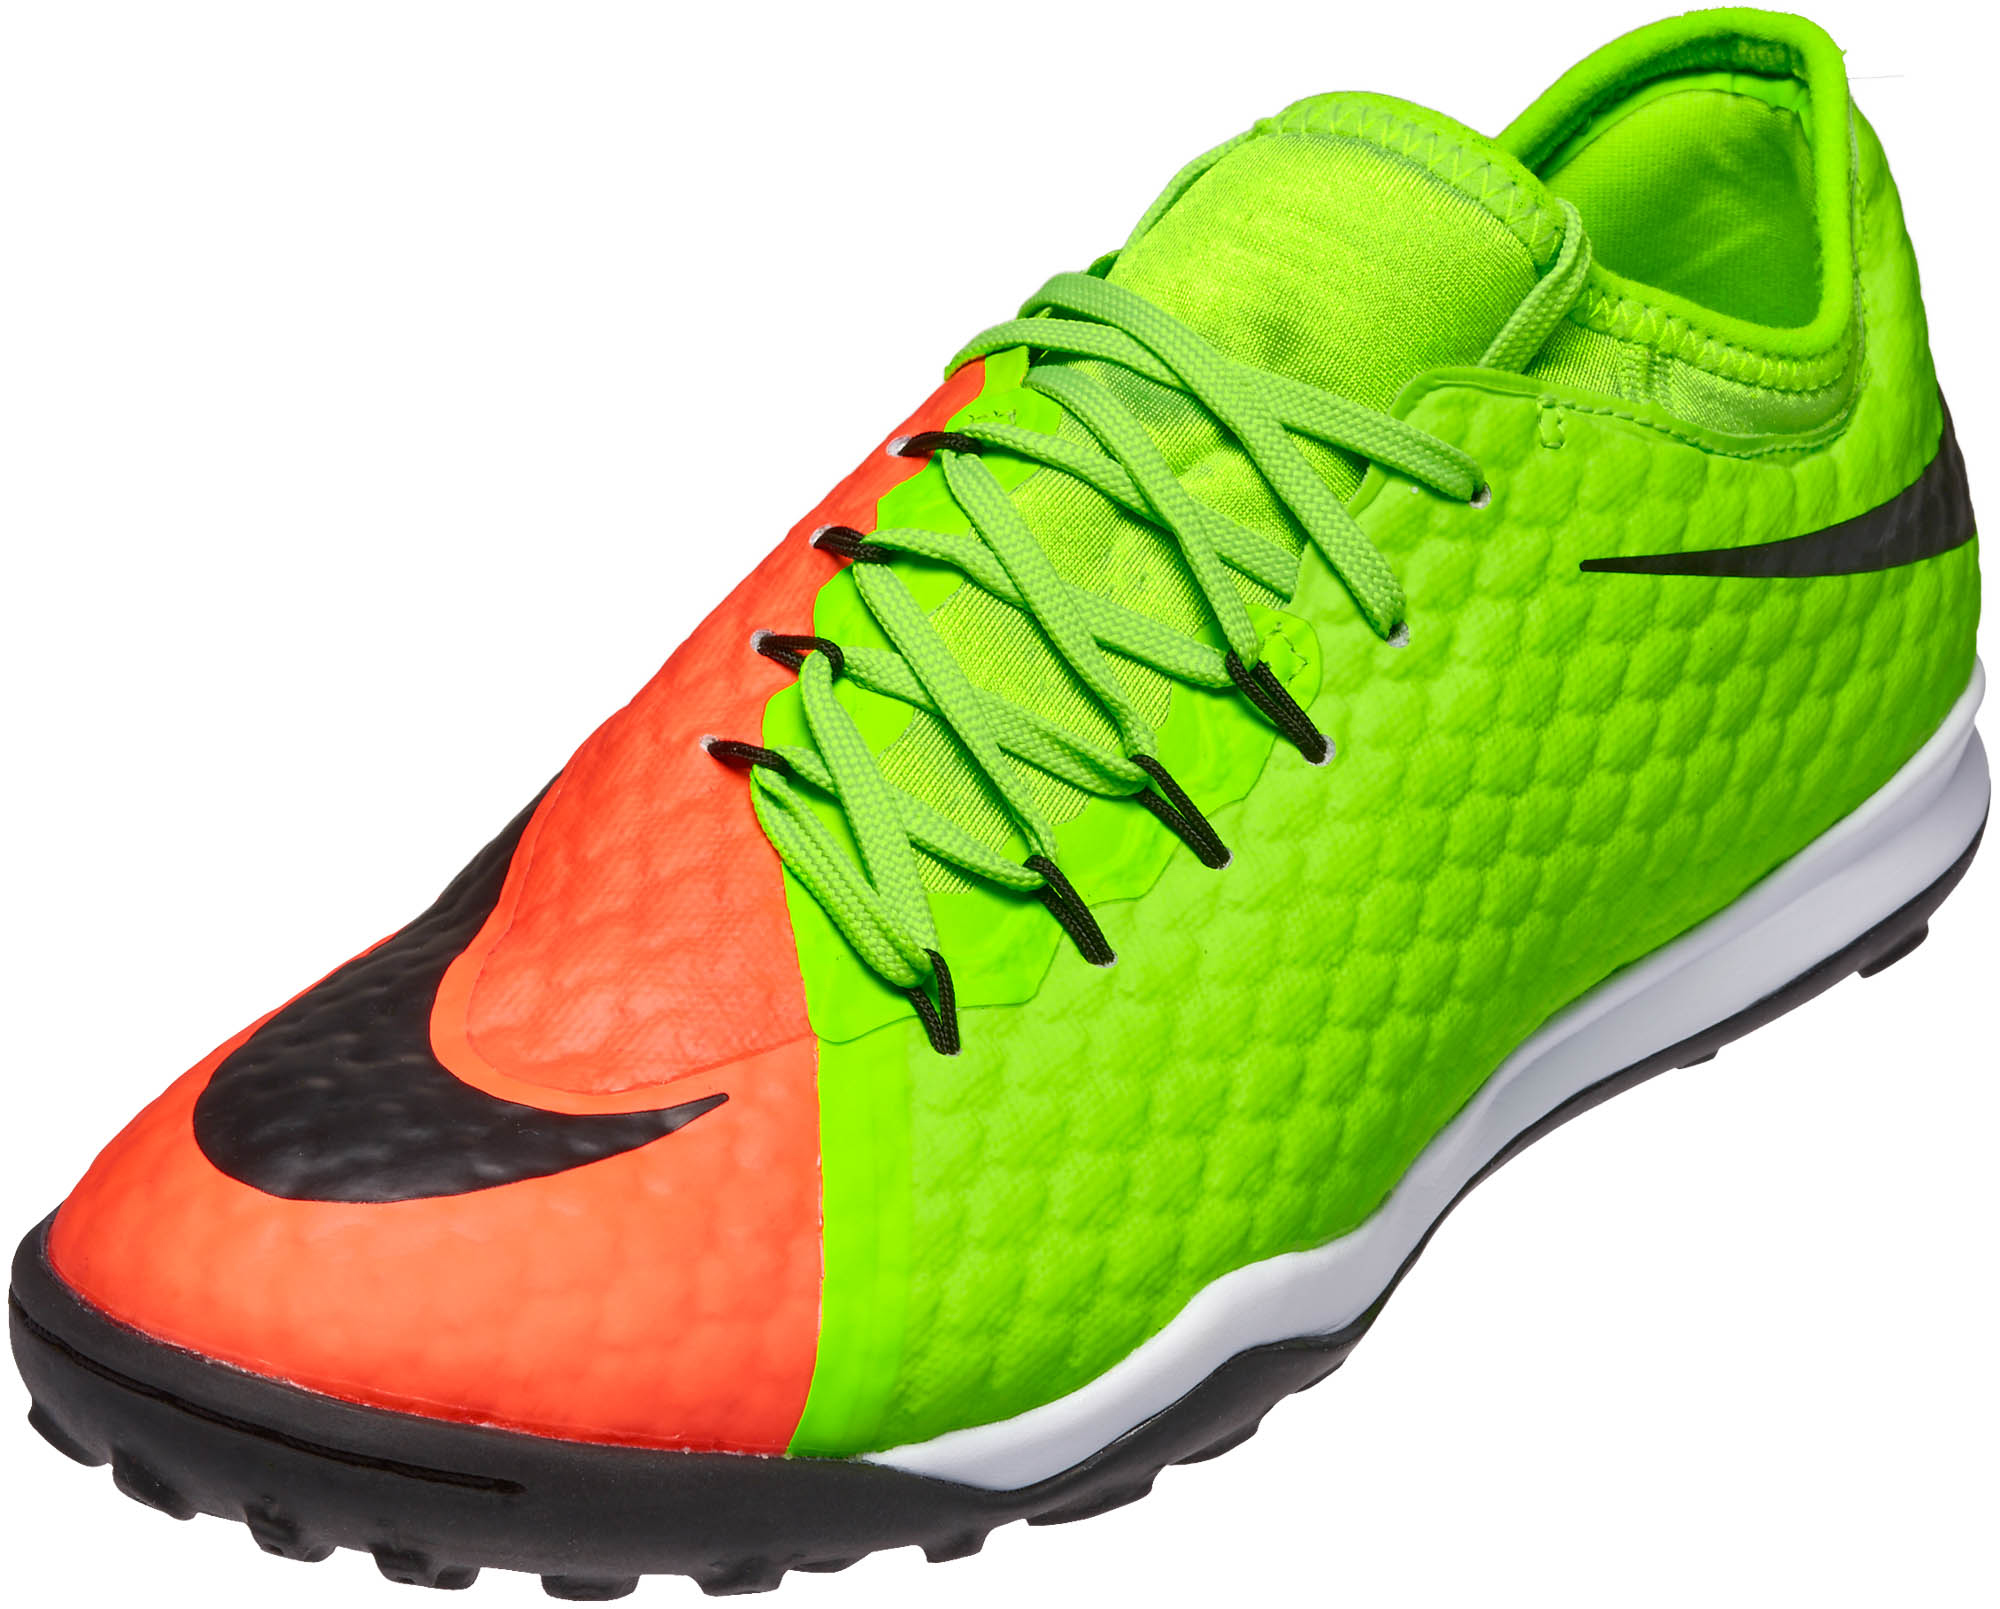 Nike HypervenomX Finale II Turf Soccer Shoes